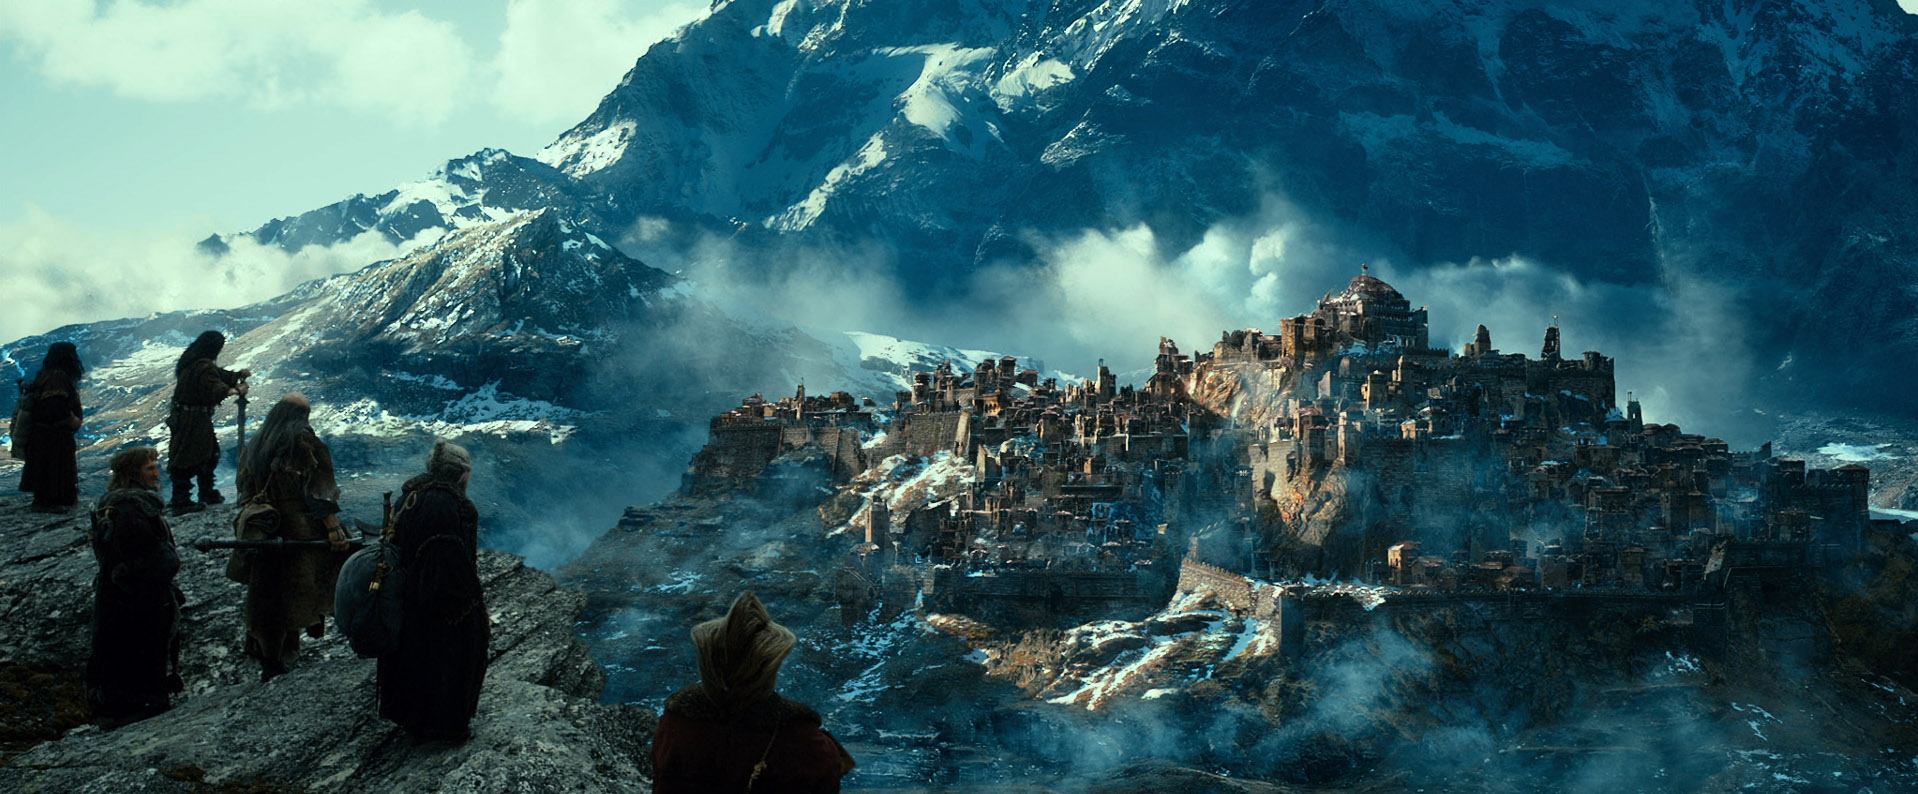 cleek_images_cinema_le_hobbit_landscape